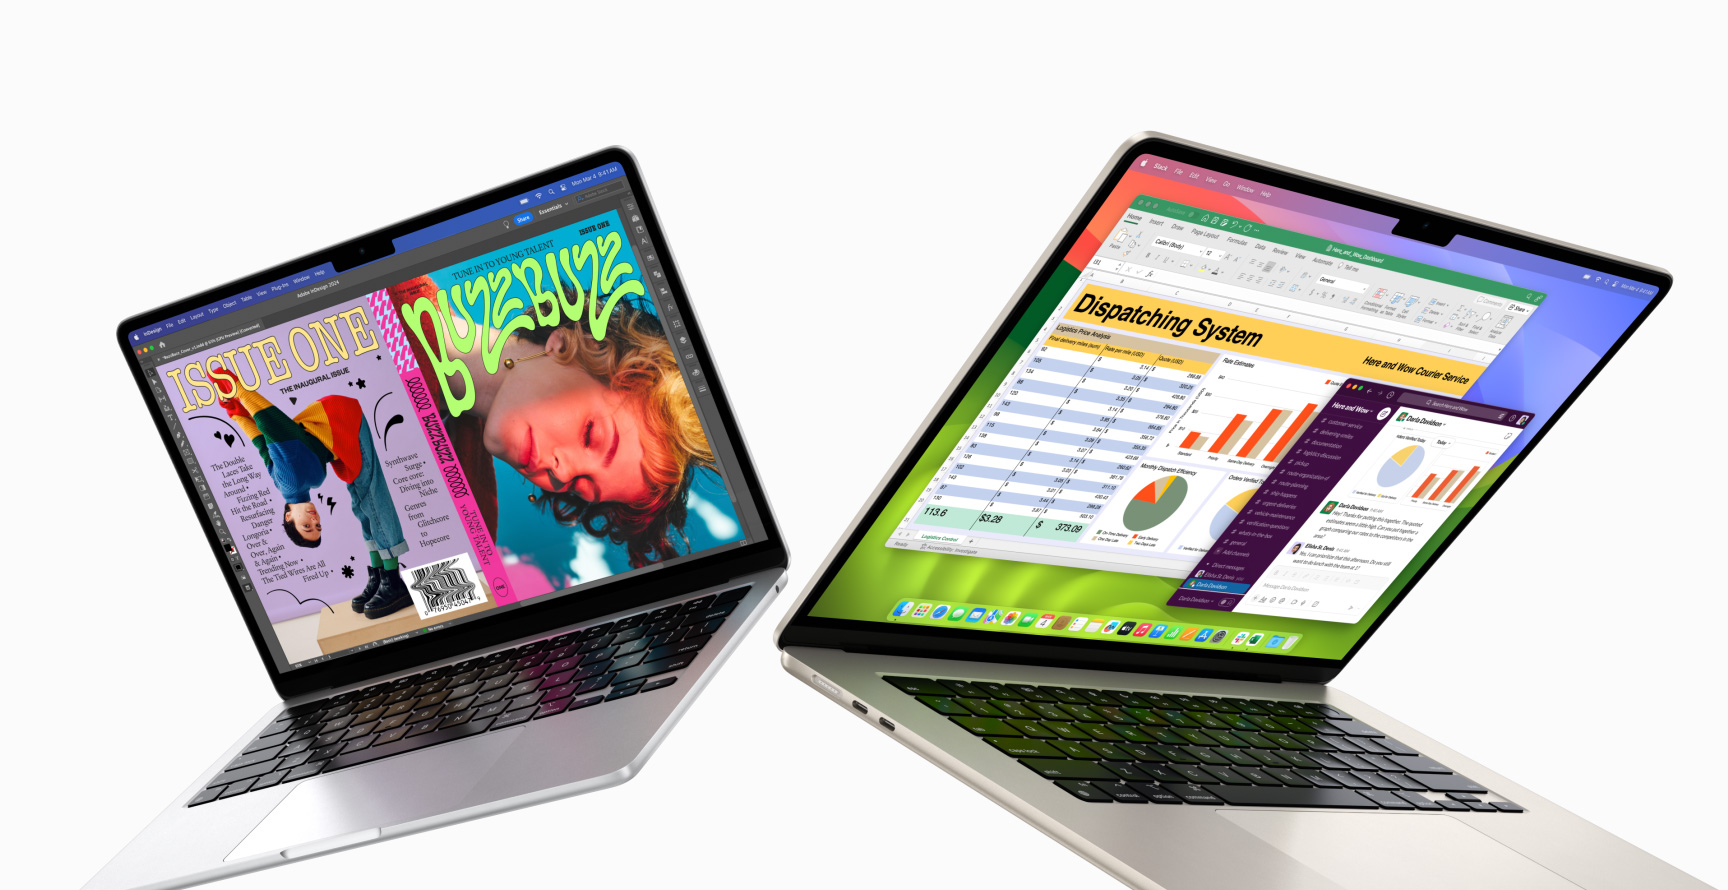 Halb geöffnetes 13" MacBook Air links und 15" MacBook Air rechts. Das 13" Display zeigt ein buntes Zeitschriften-Cover, das mit In Design erstellt wurde. Das 15" Display zeigt Microsoft Excel und Slack.